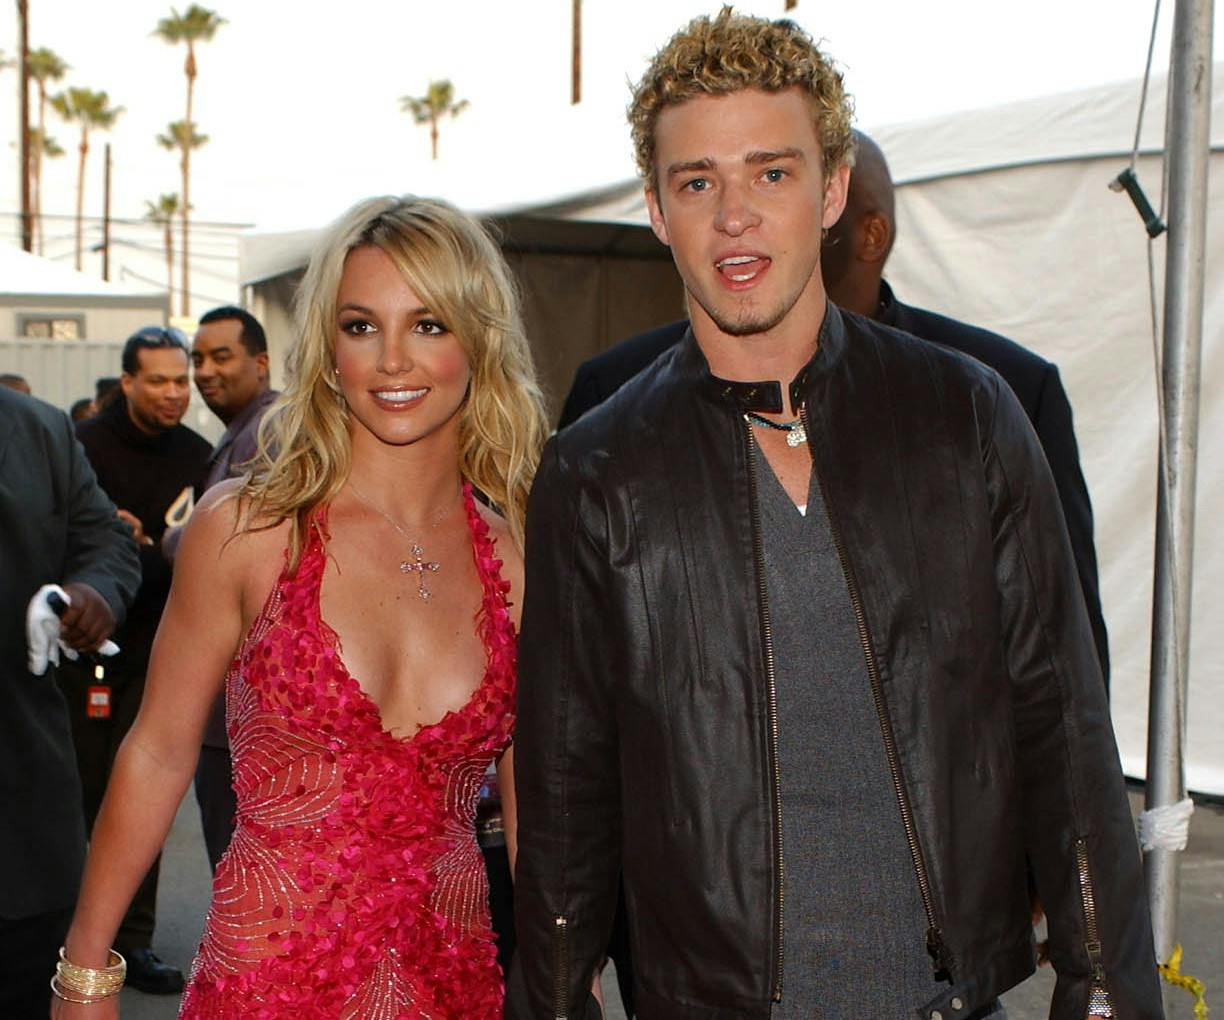 Noget tyder på, at Justin Timberlake ikke ligefrem jubler over Britney Spears kommende memoir.